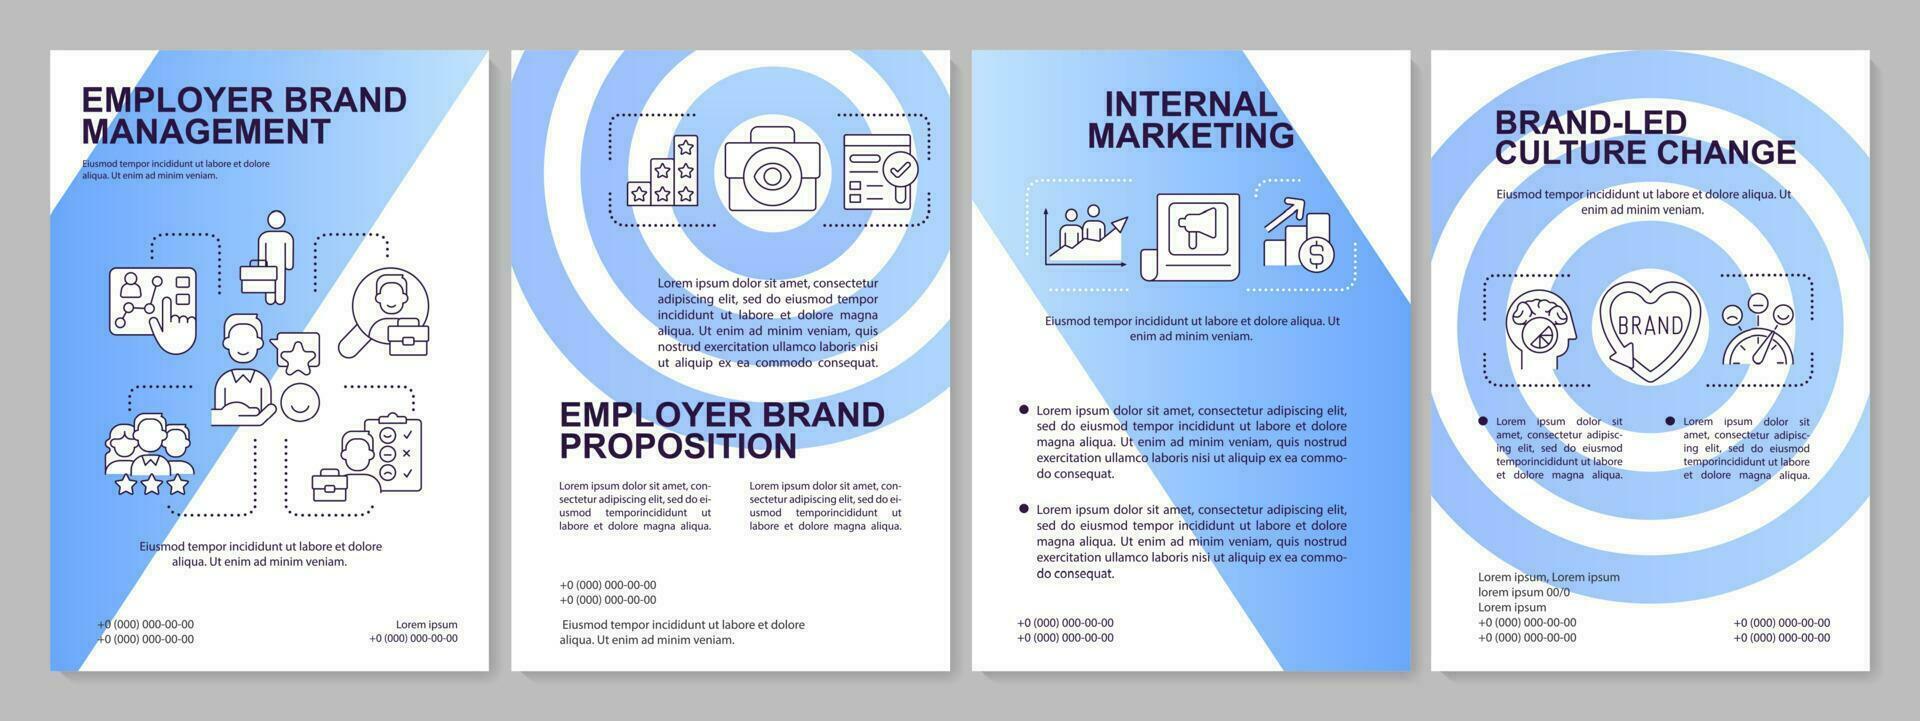 interno márketing azul degradado folleto modelo. hora programa. folleto diseño con lineal iconos 4 4 vector diseños para presentación, anual informes